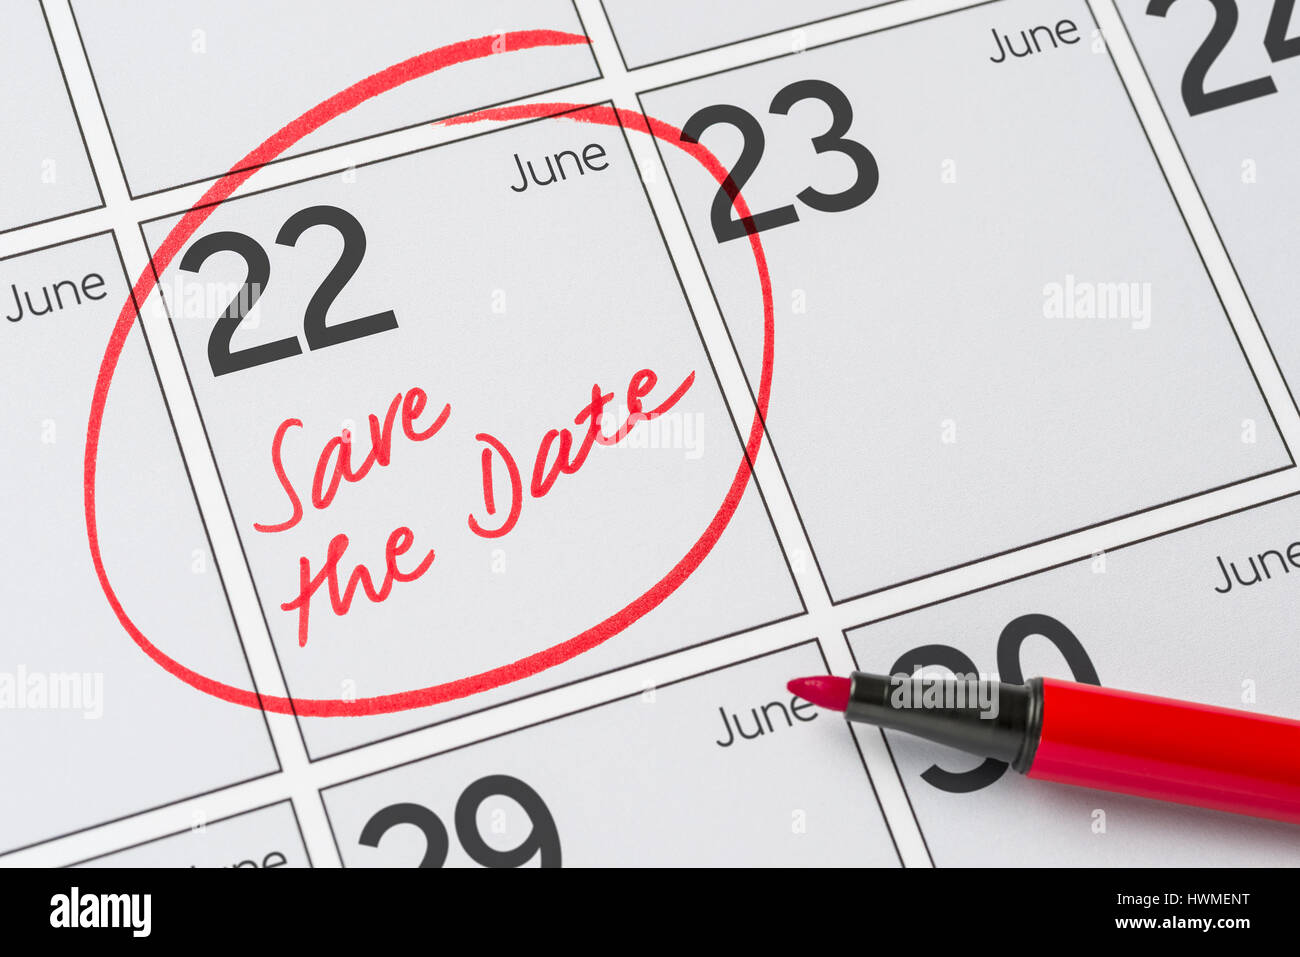 Enregistrer la date inscrite sur un calendrier - juin 22 Banque D'Images